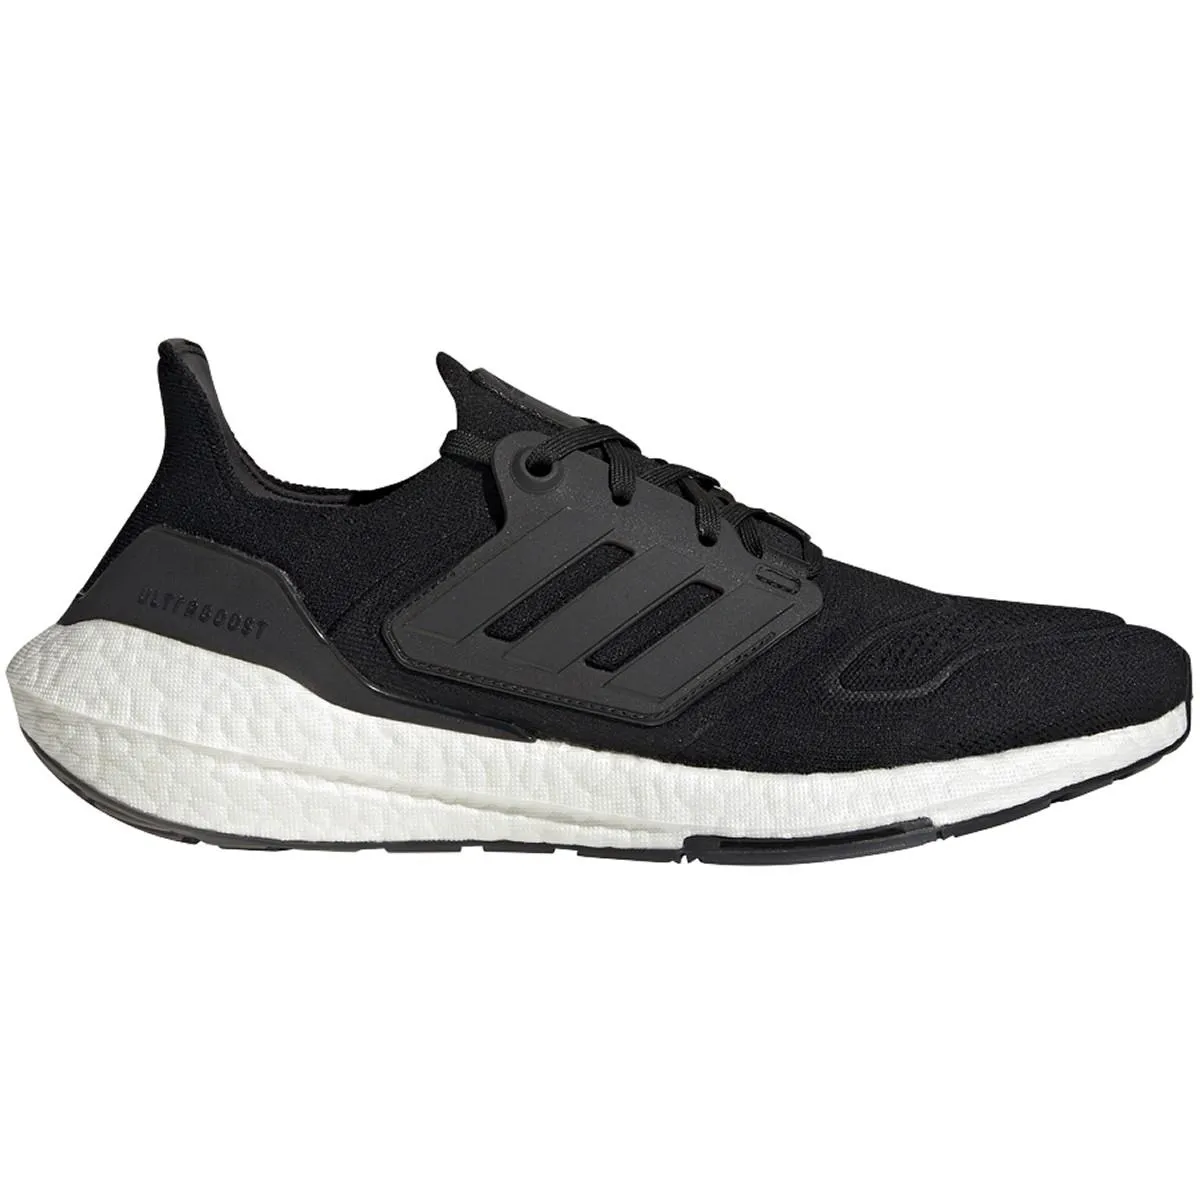 E185019 Adidas Ultraboost 22 Mens Running Shoes